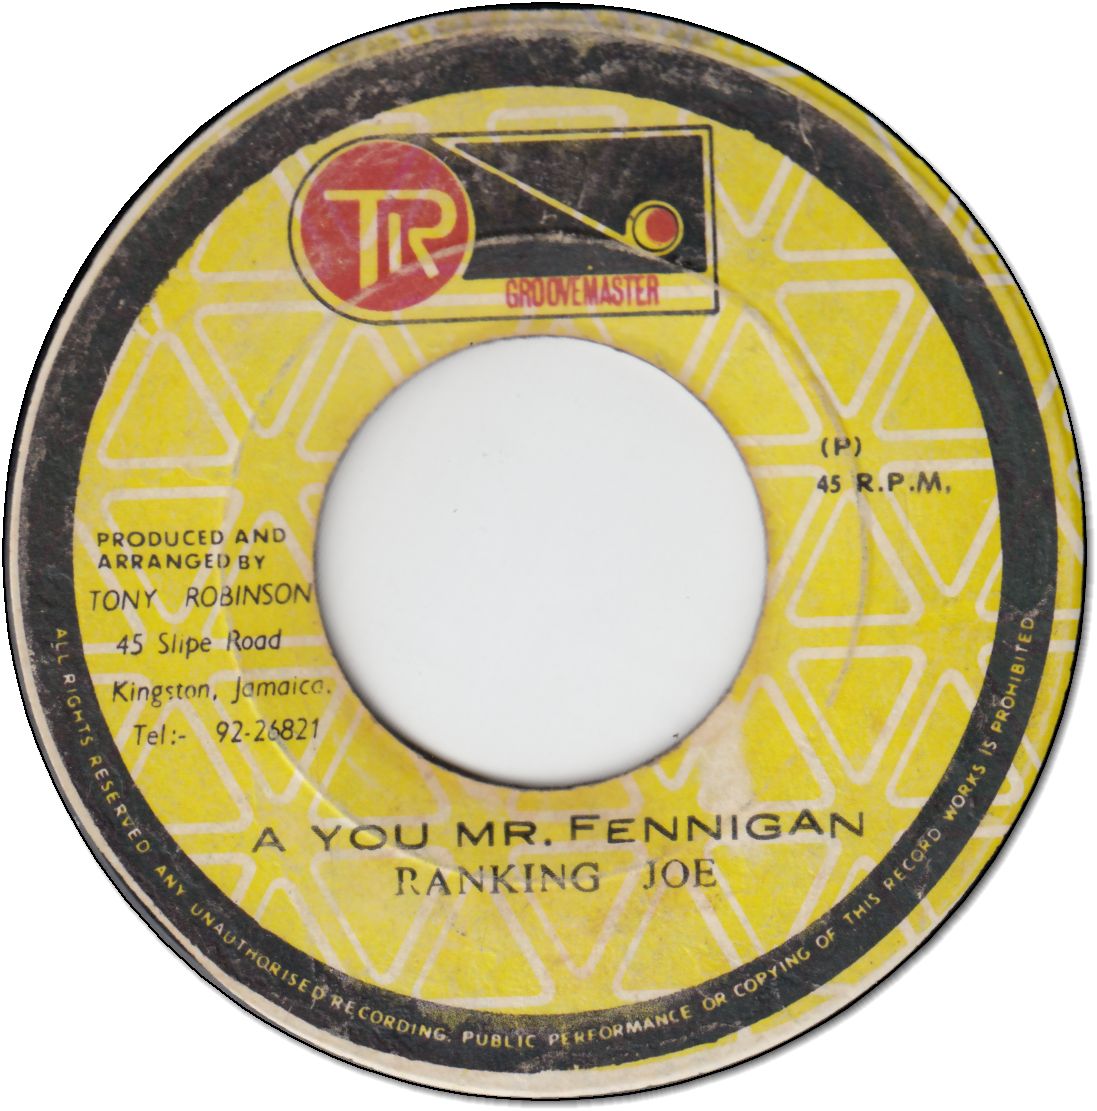 A YOU MR.FENNIGAN (VG+)